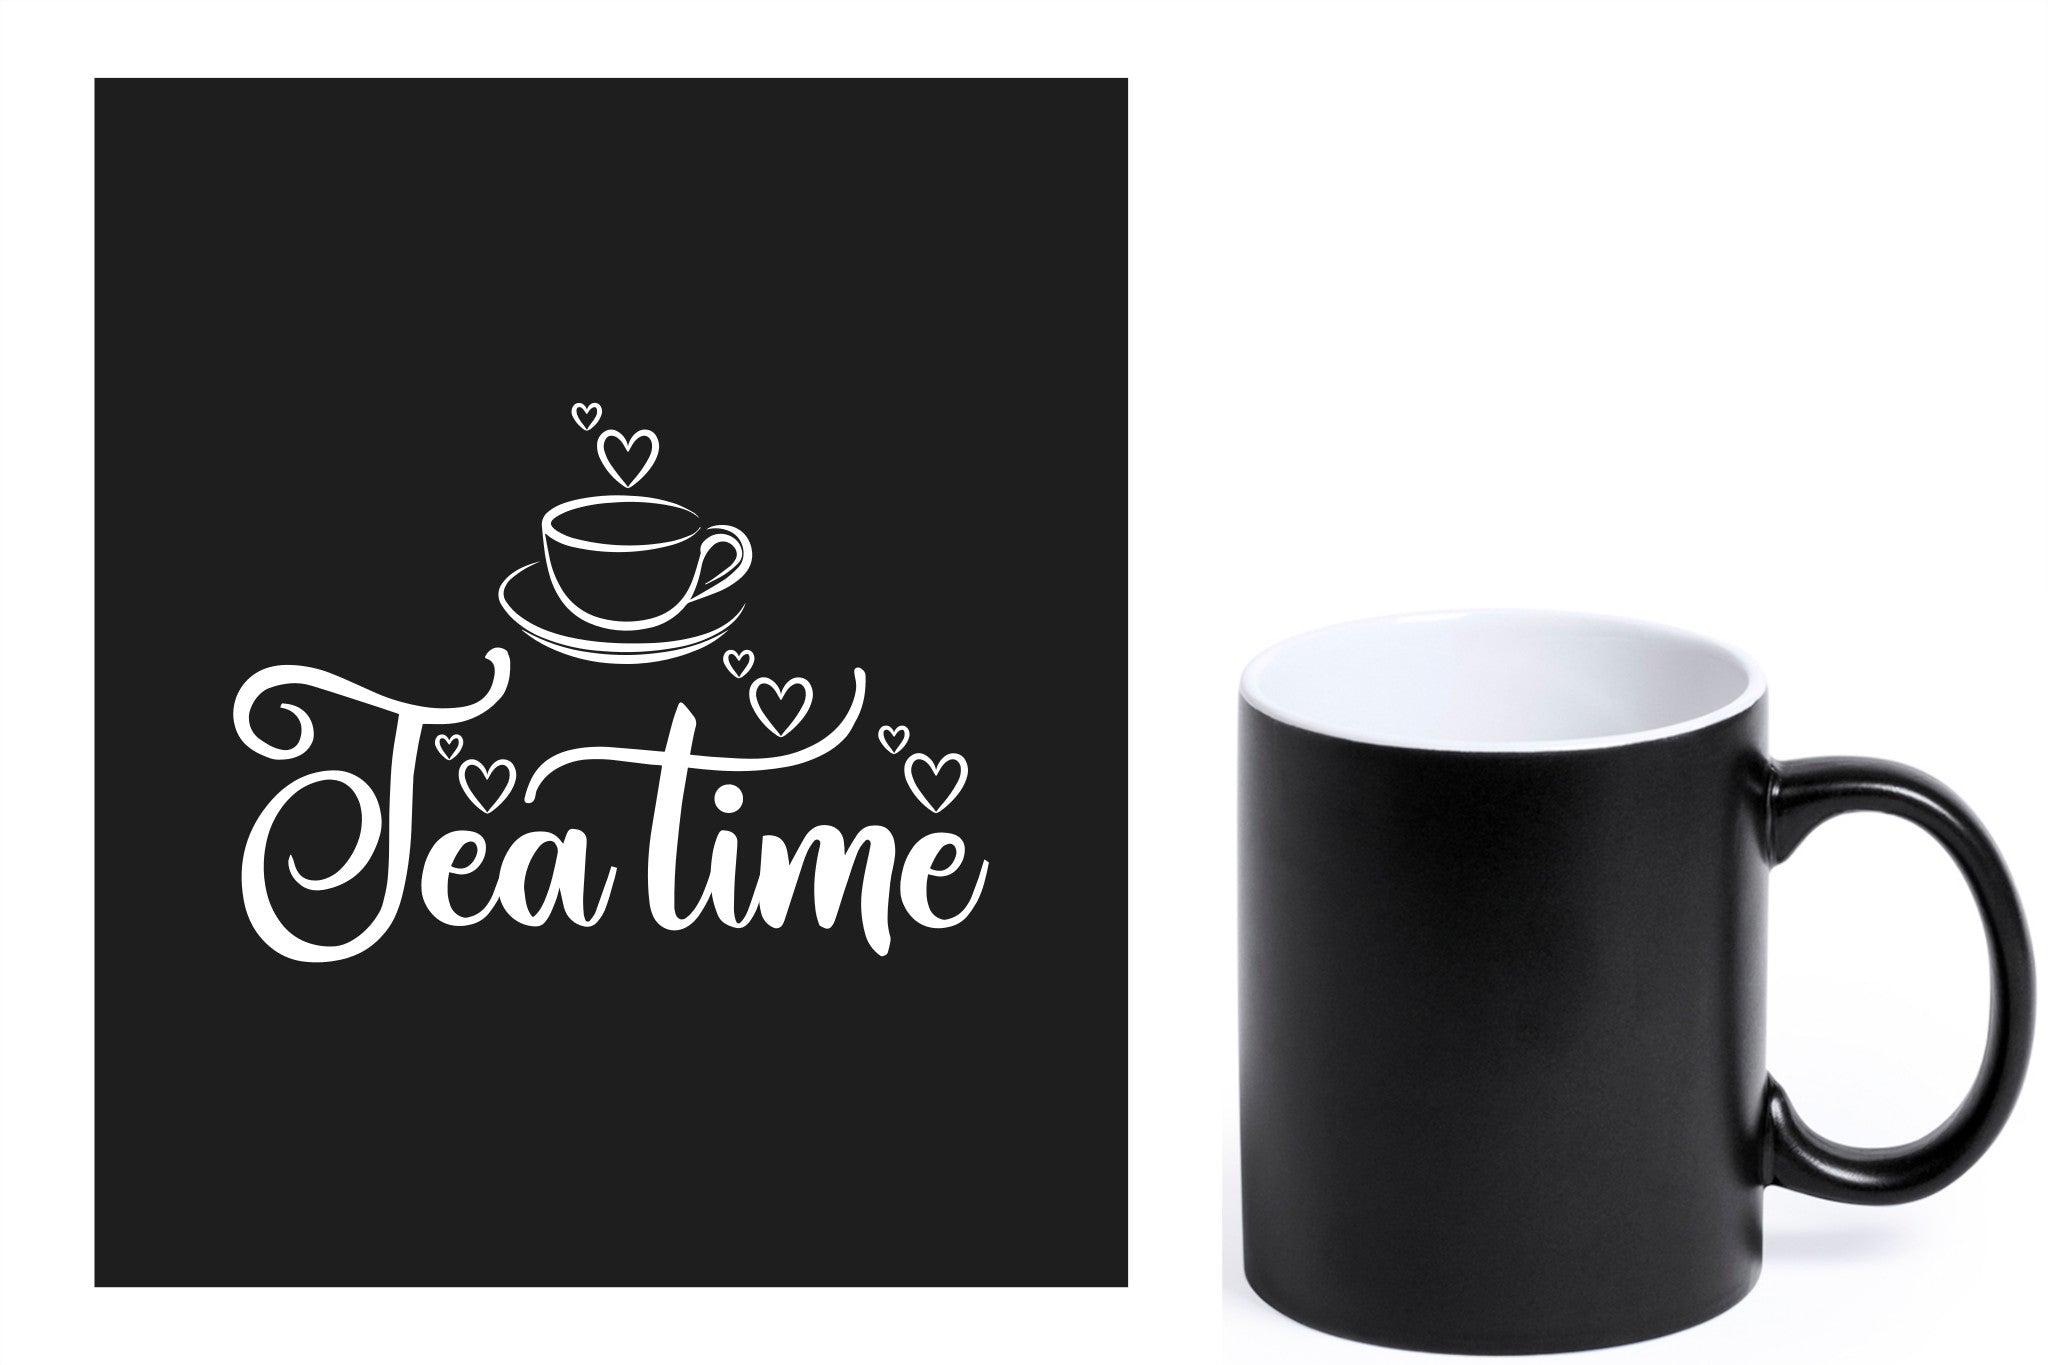 zwarte keramische mok met witte gravure  'tea time'.